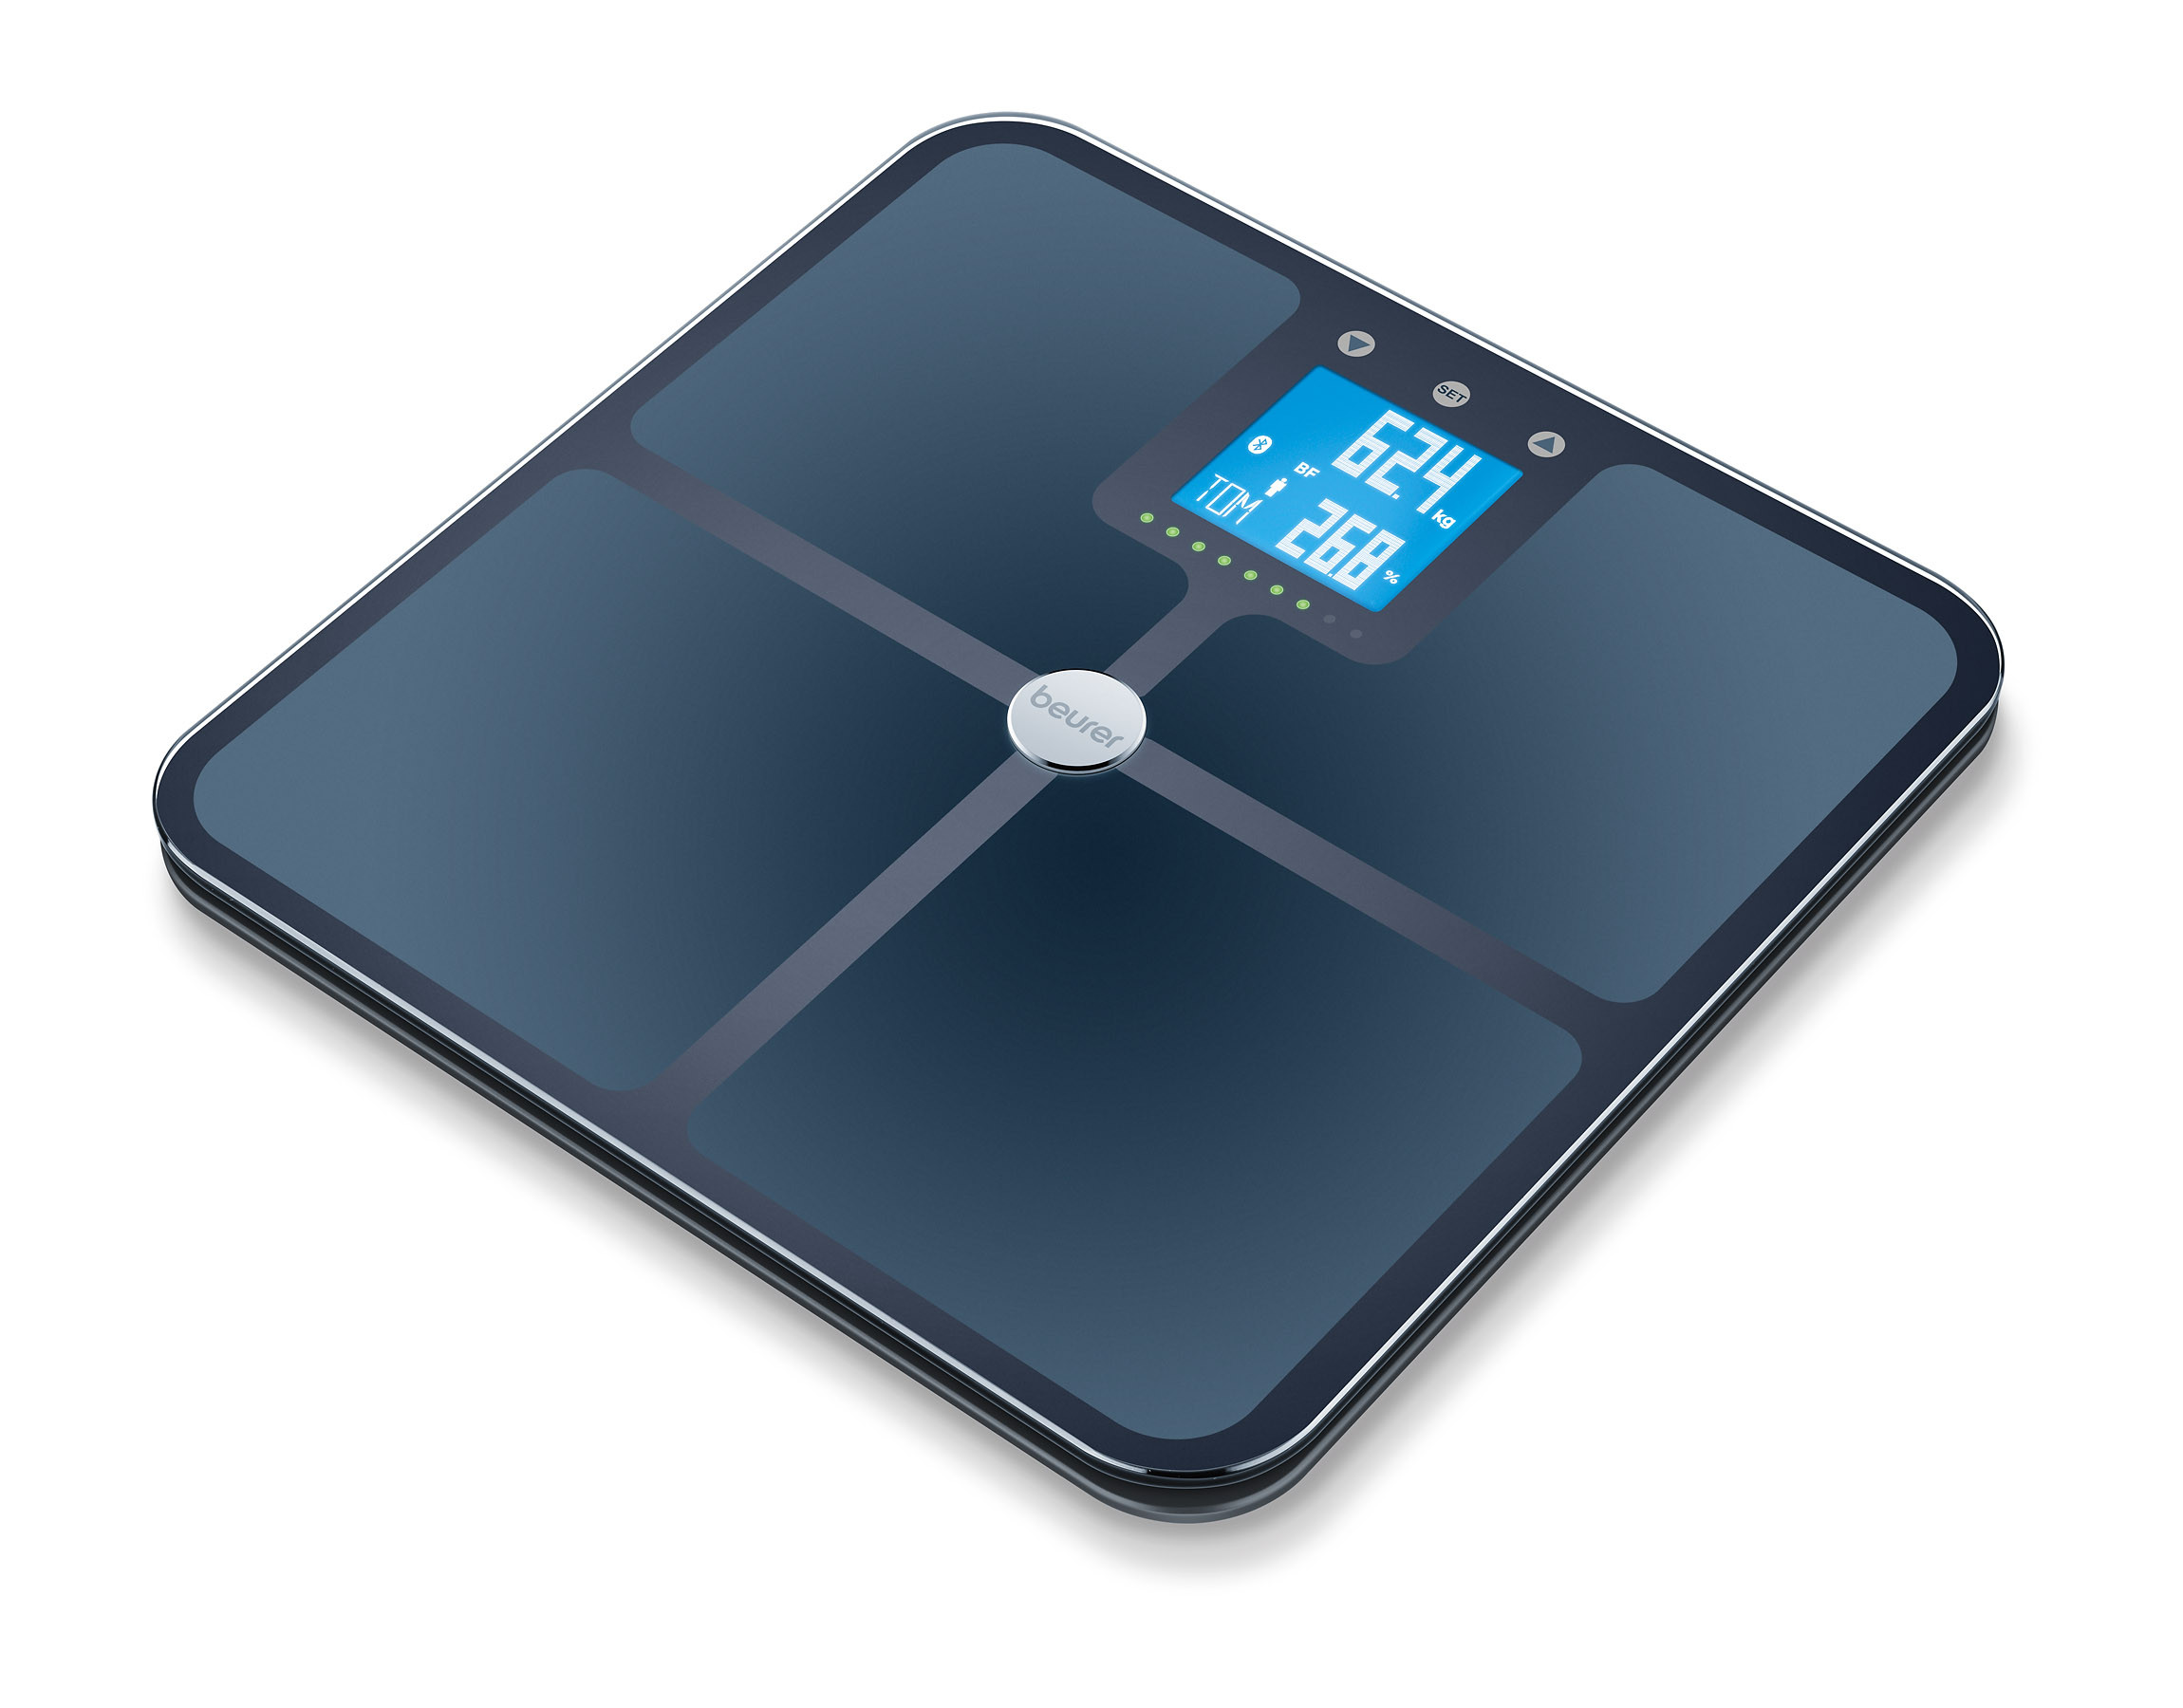 Pèse-personne digitale avec analyse de la graisse corporelle avec bluetooth verre noir BF950 - 180 kg - 1 pc